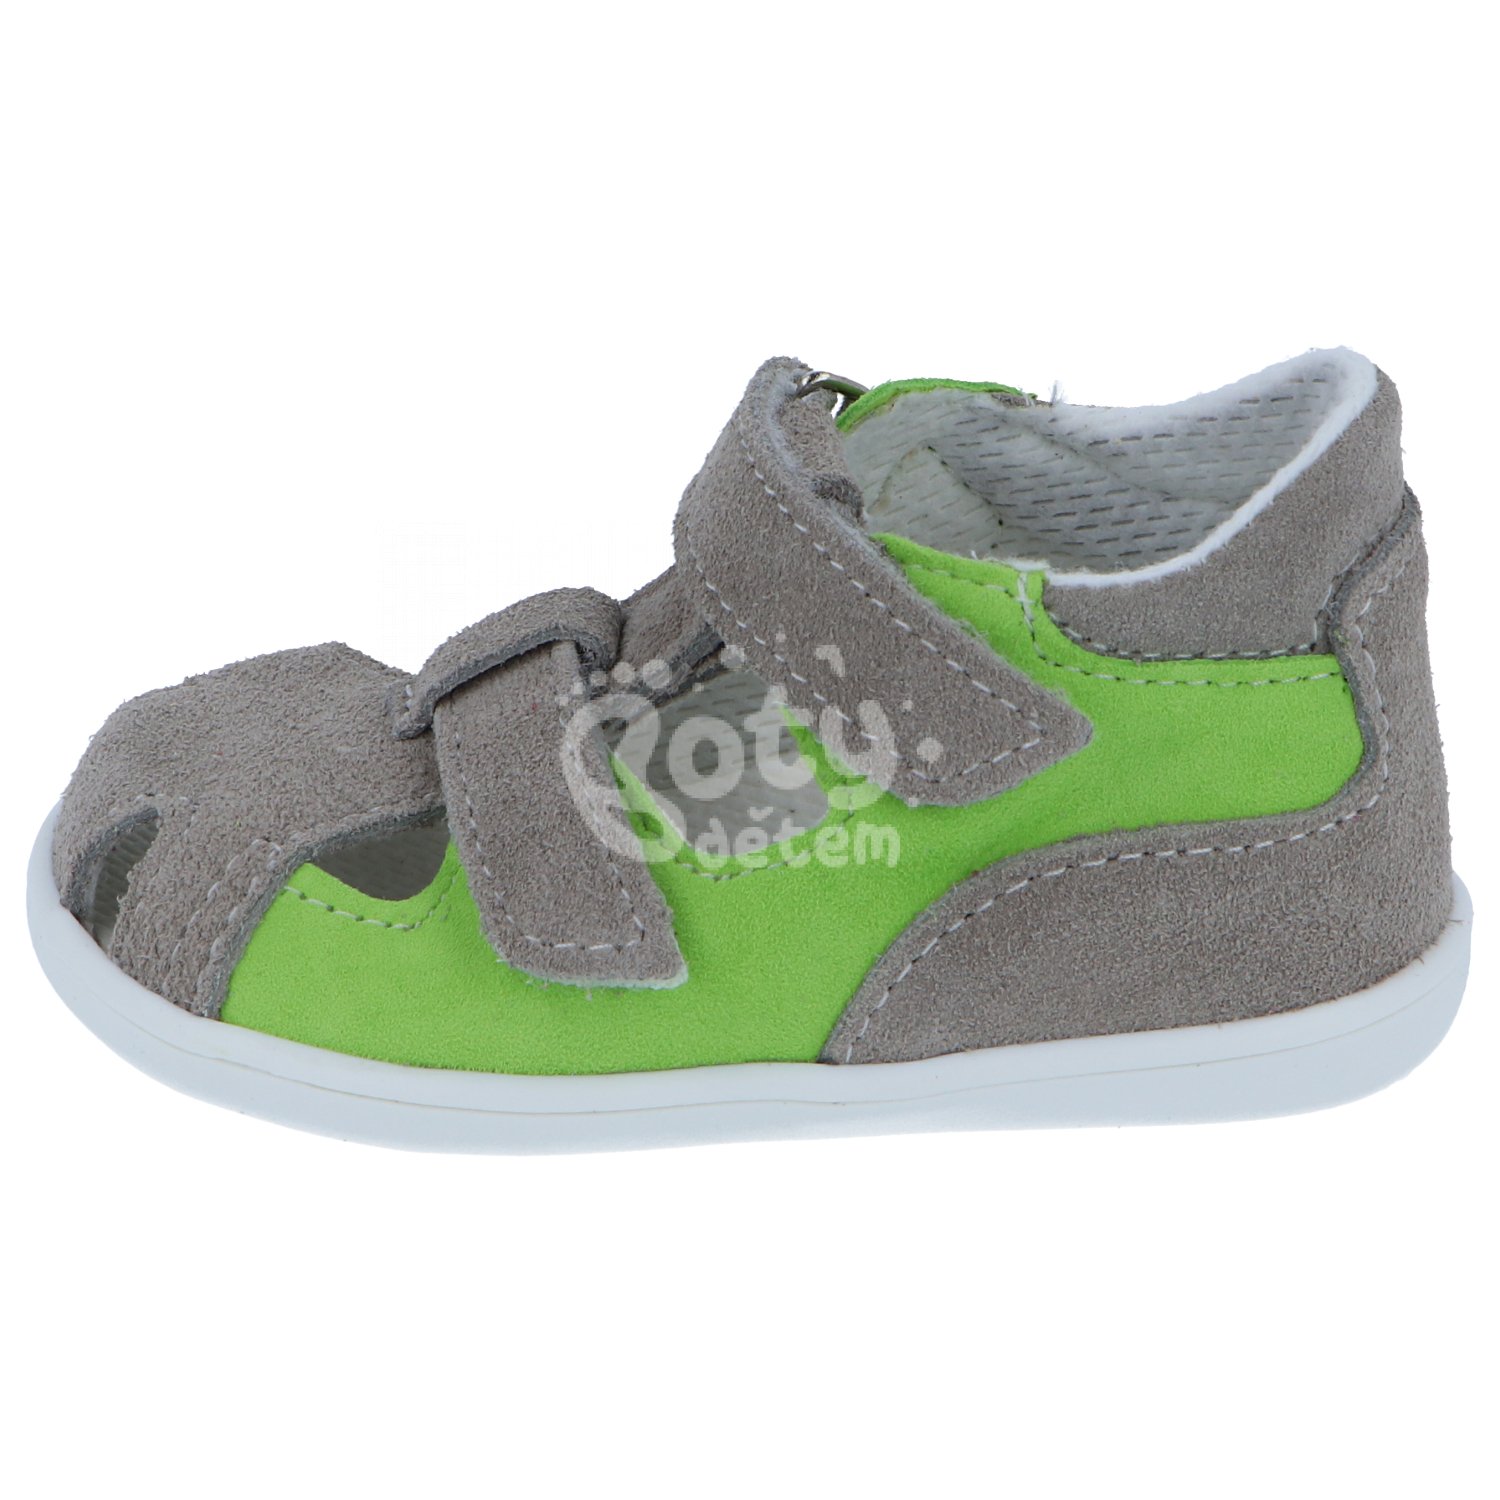 Jonap kožené sandálky 041 S šedá zelená